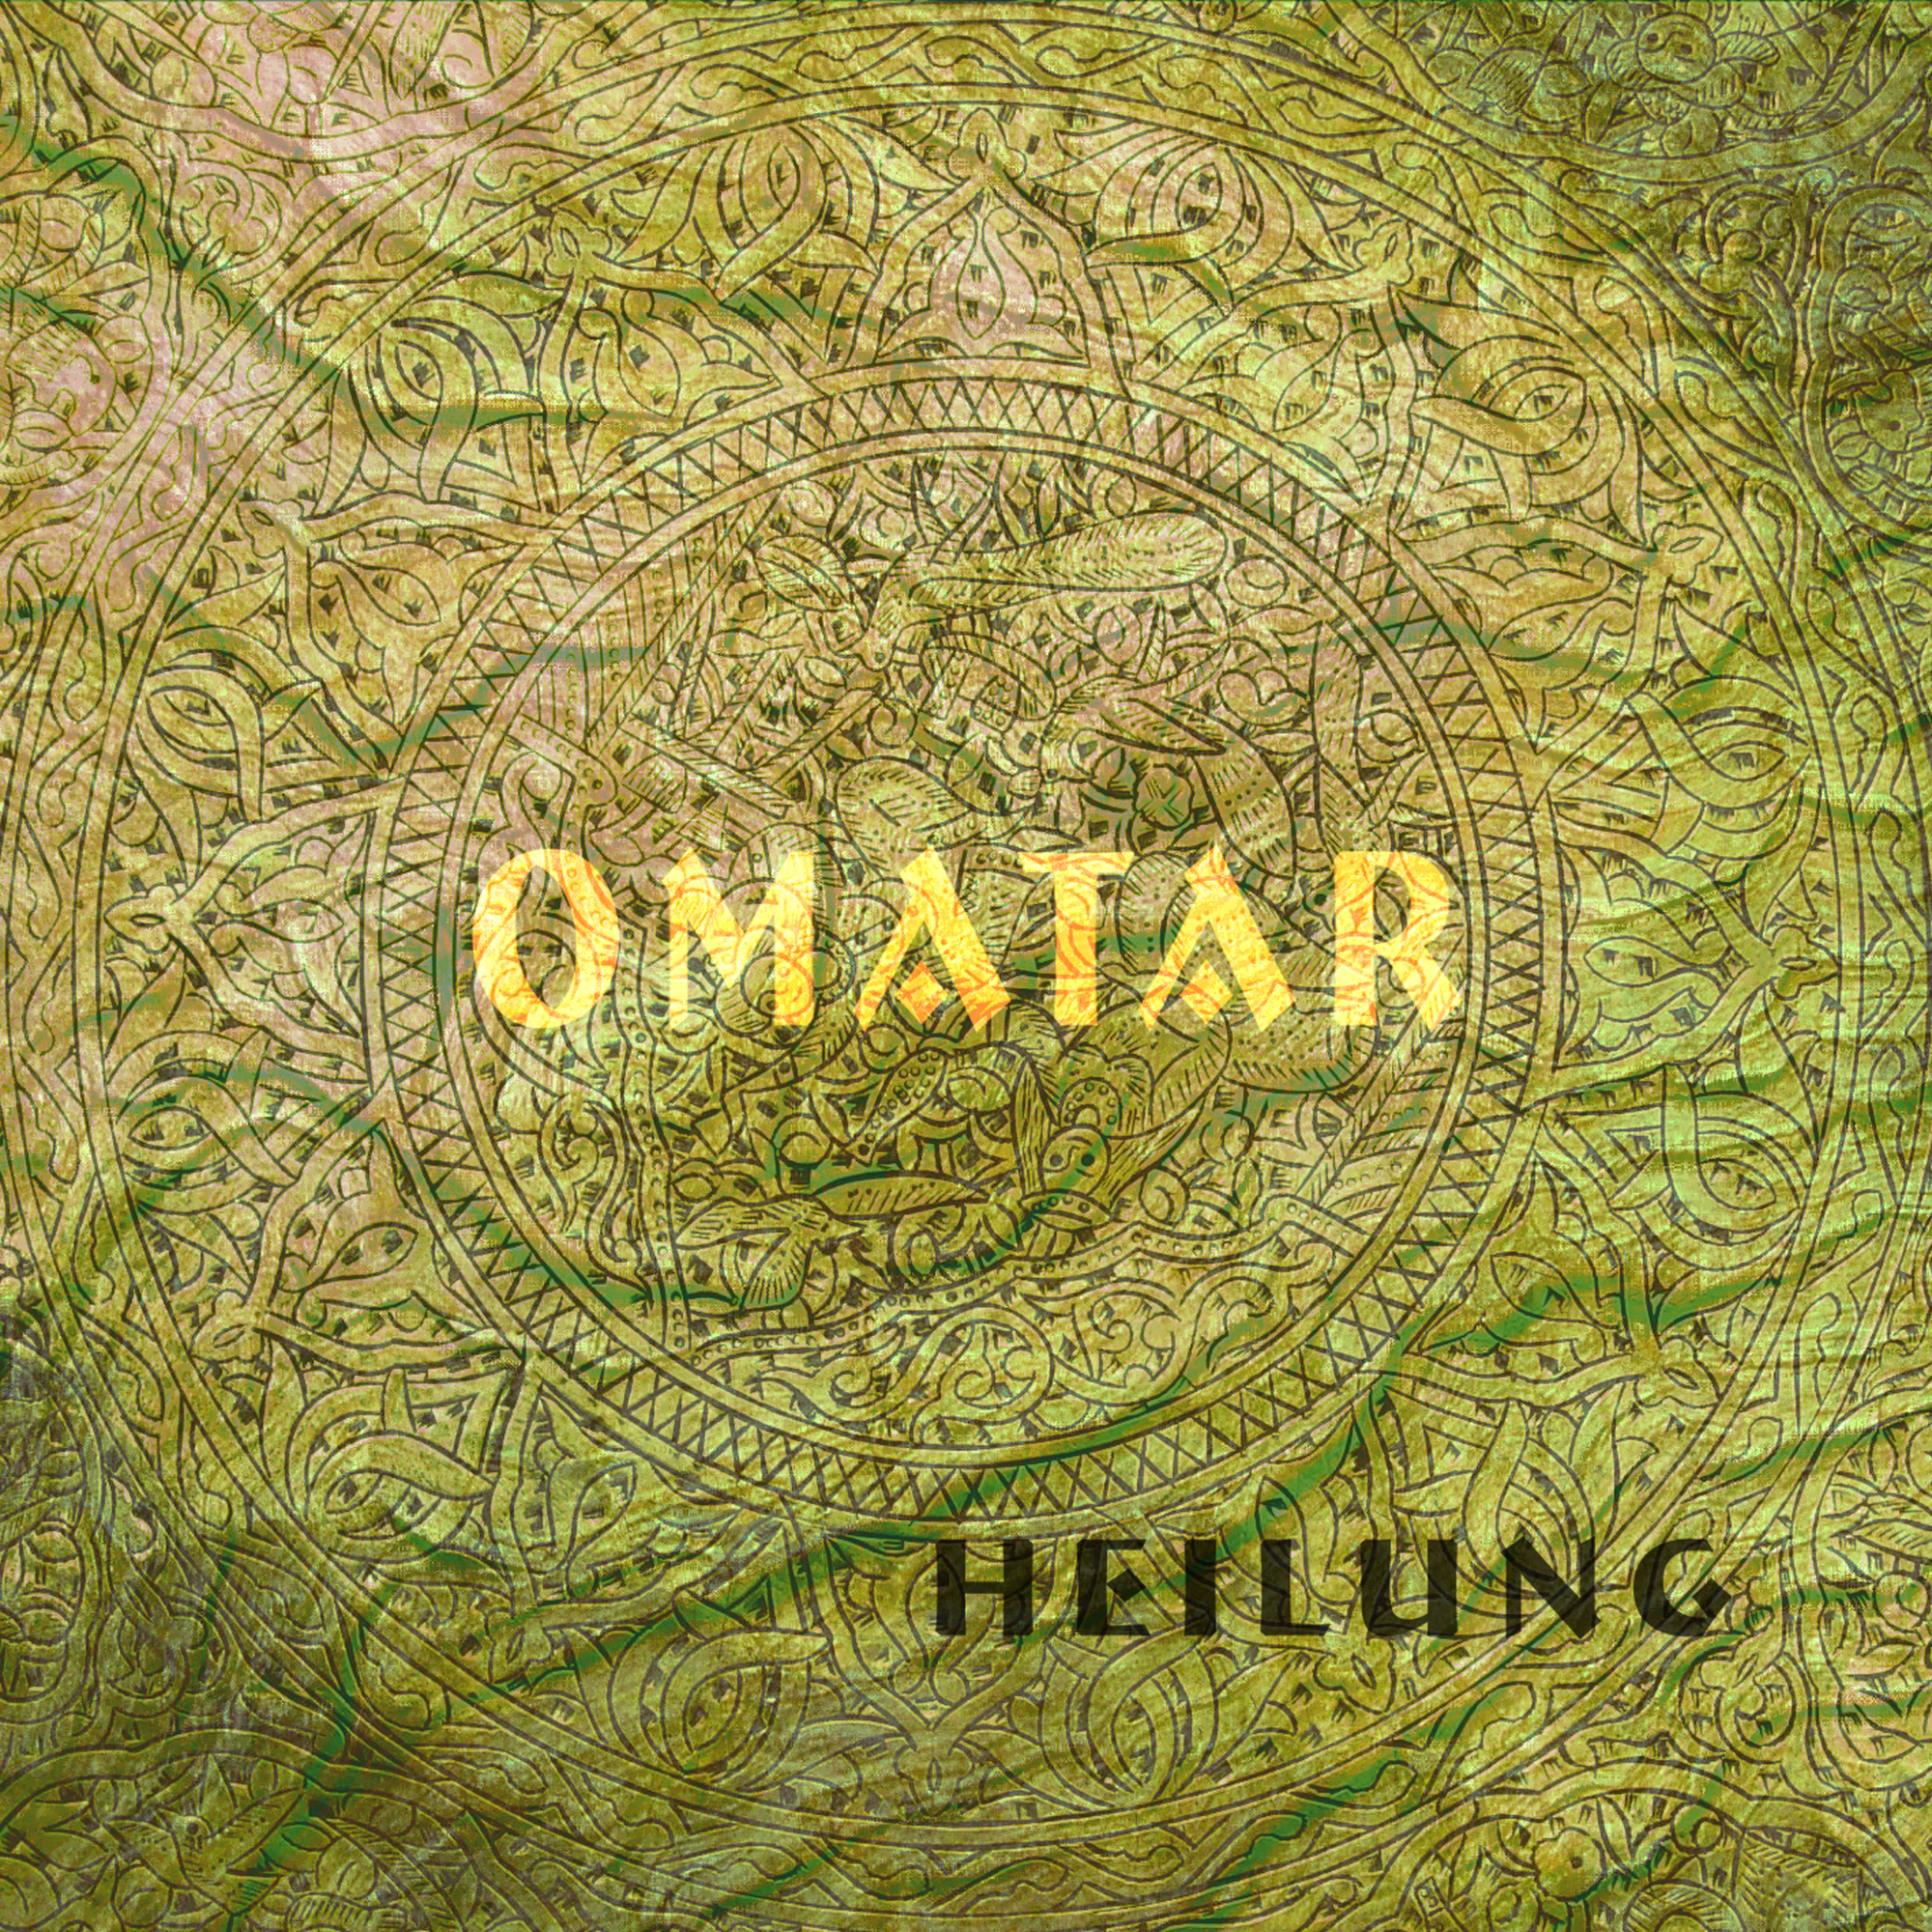 Omatar-Heilung